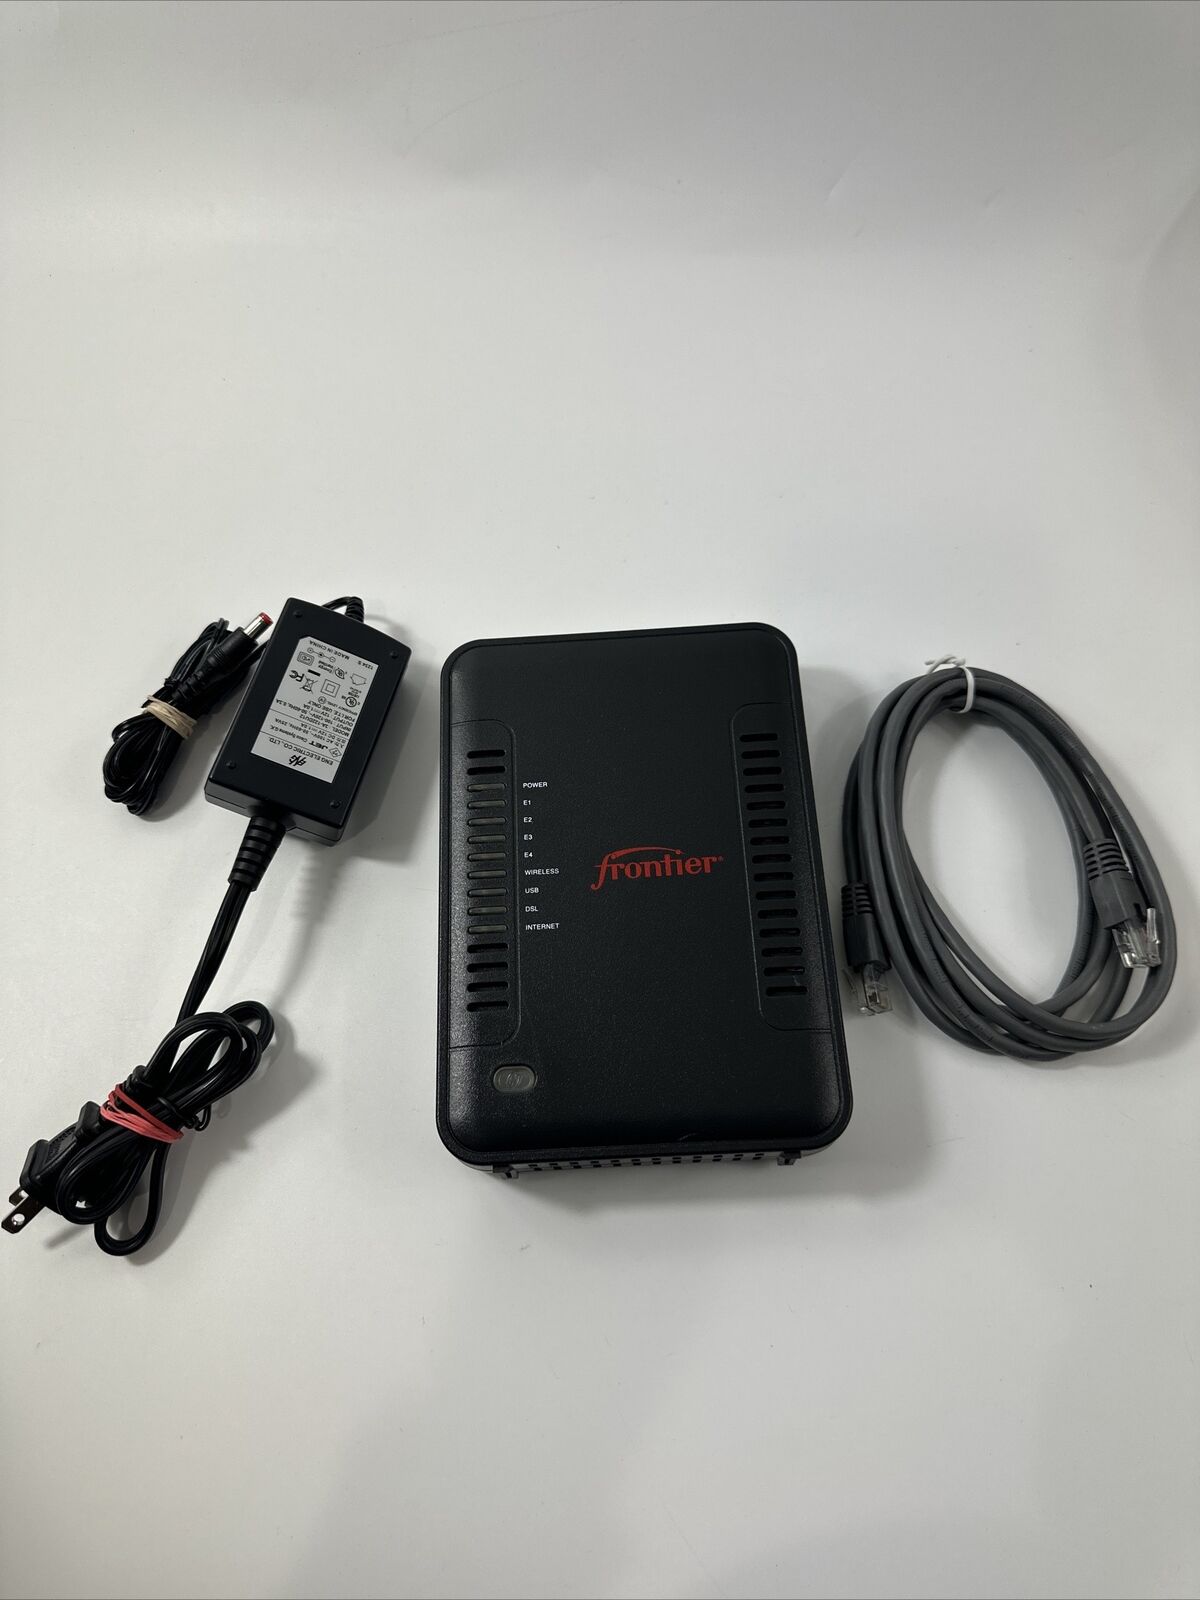 Netgear Model 7550 B90-755044-15 Frontier ADSL2+ Modem Router